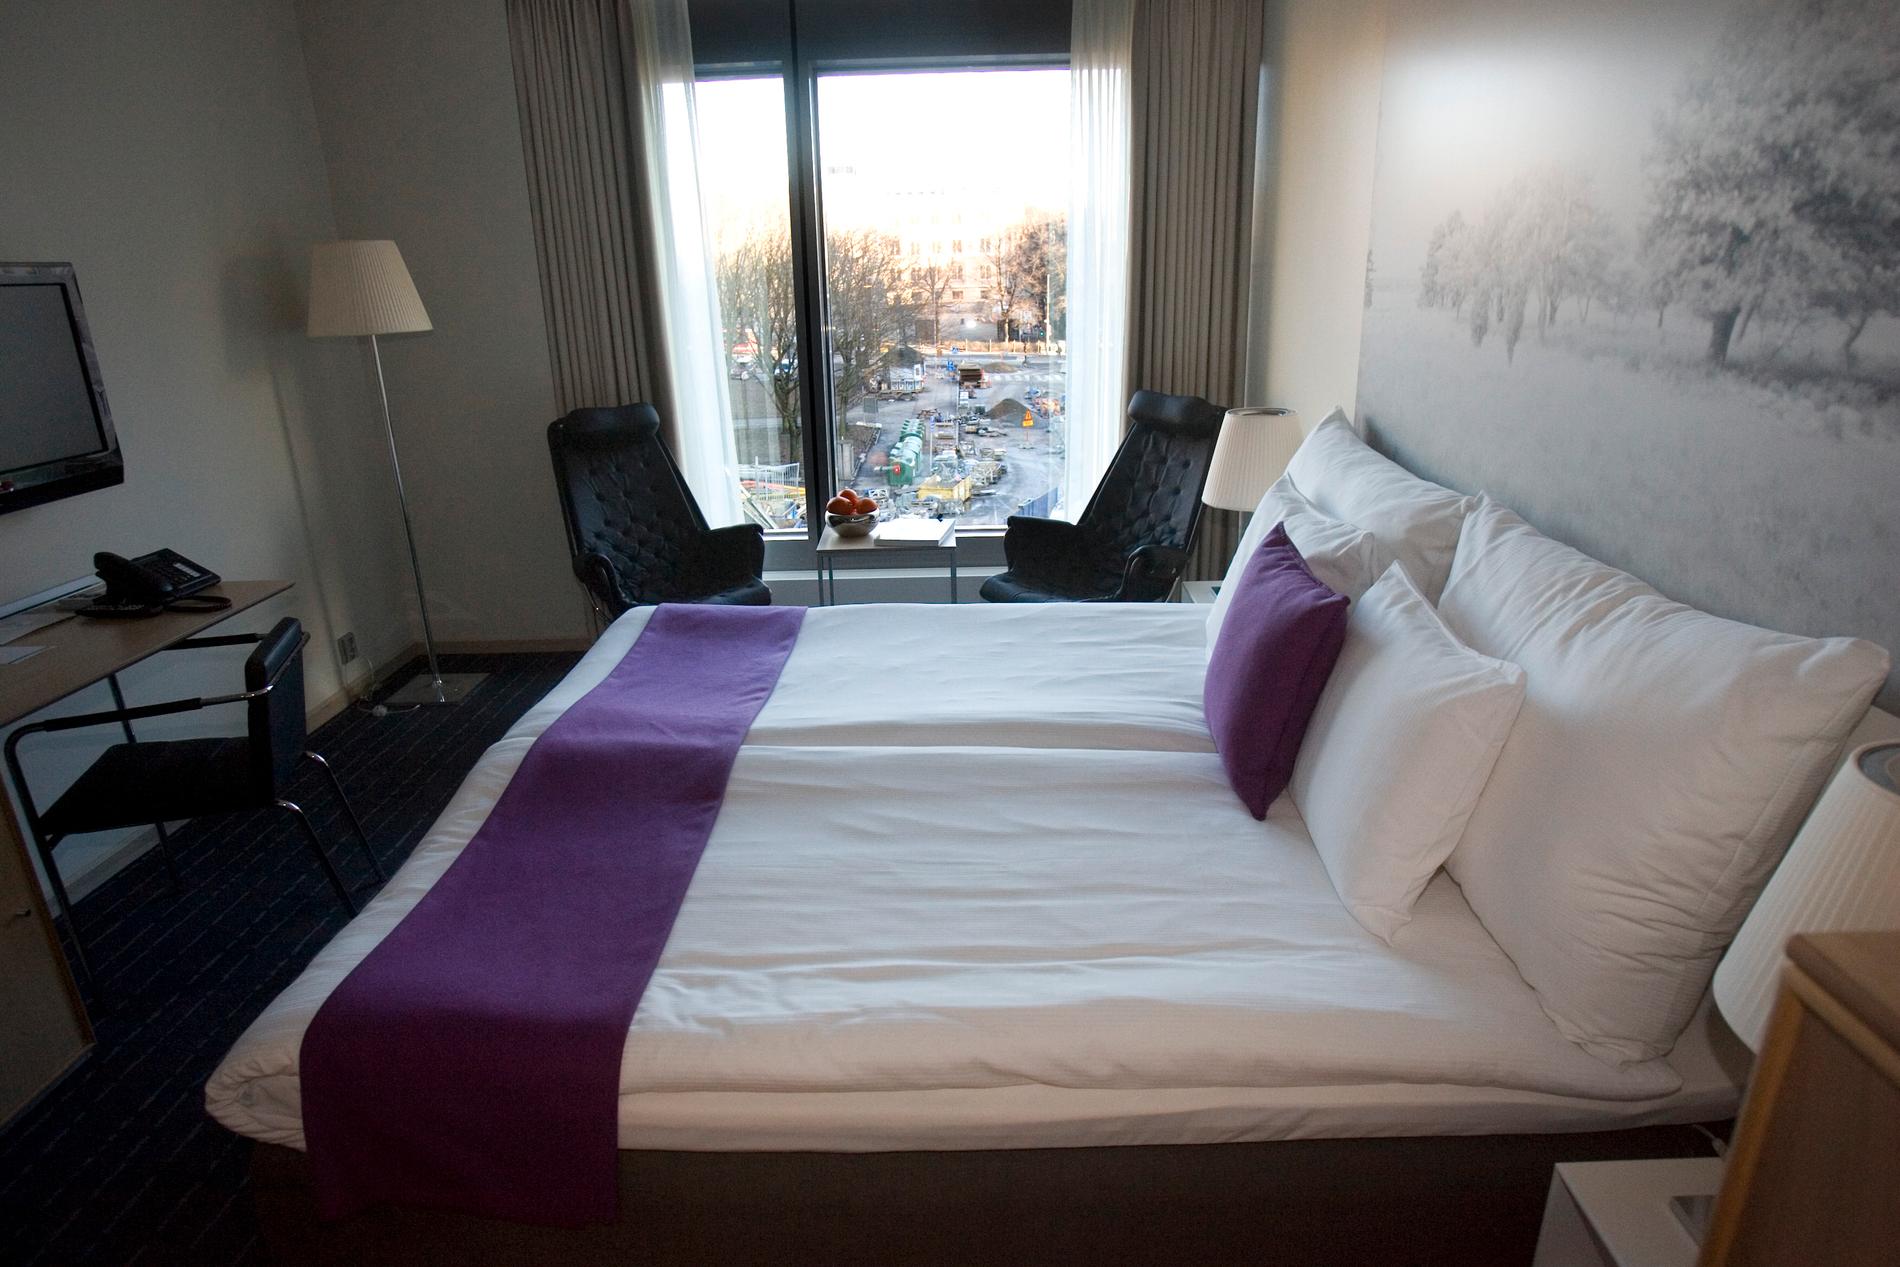 Svenska hotell har drabbats av avbokningar efter Kinas reseförbud. Arkivbild.